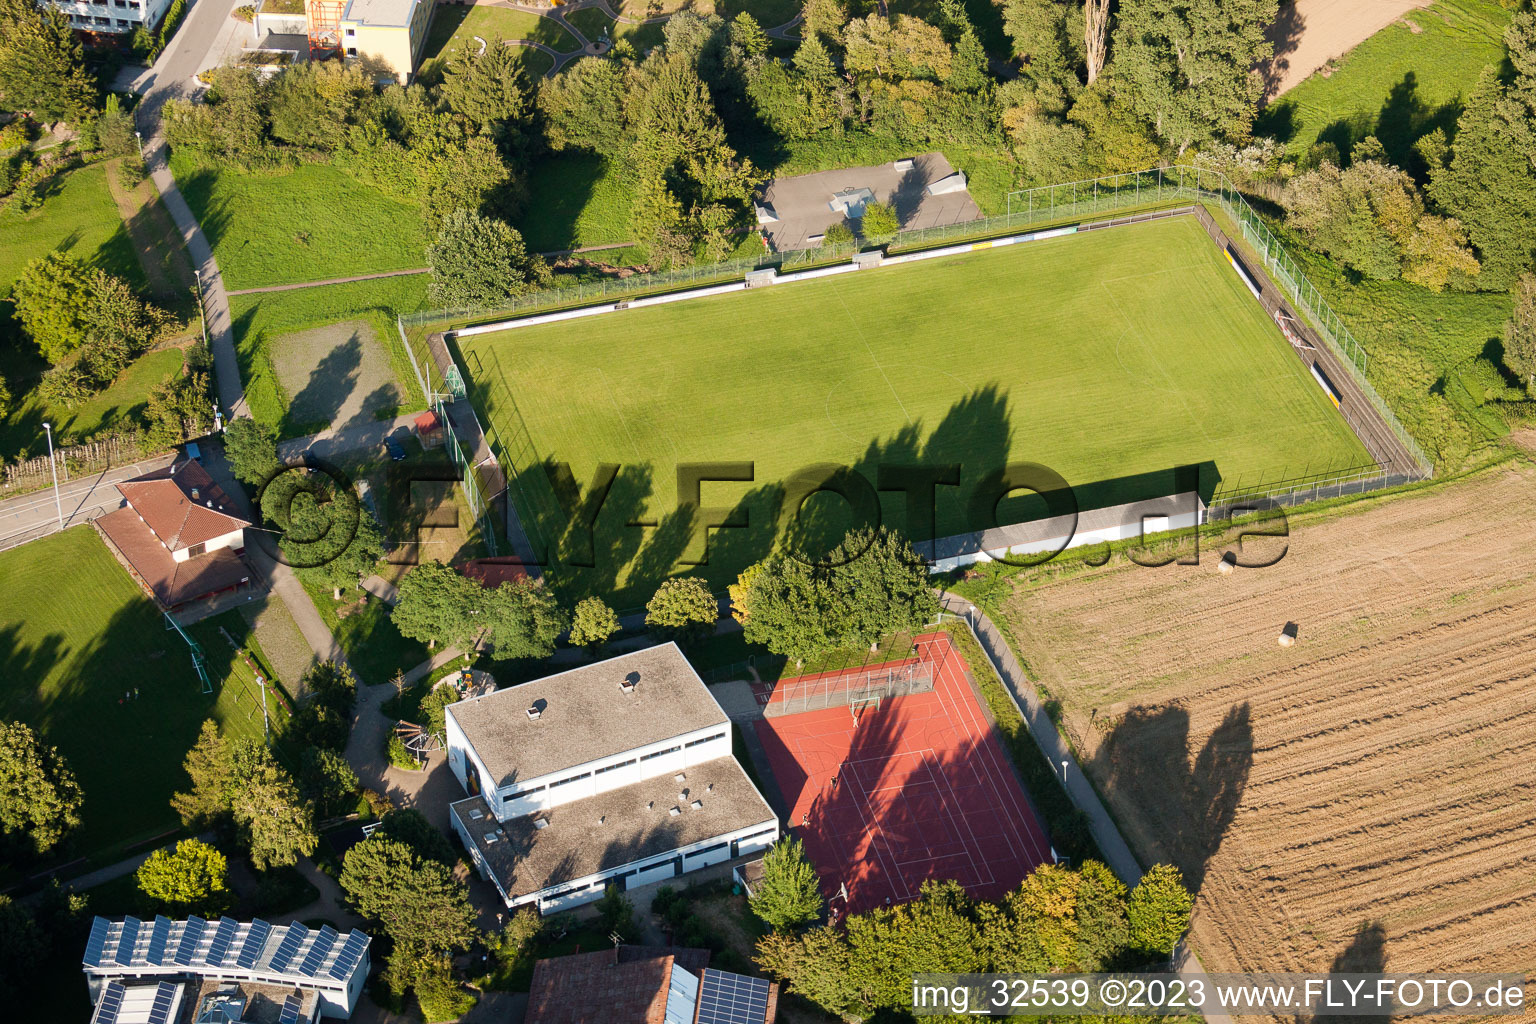 Keltern dans le département Bade-Wurtemberg, Allemagne du point de vue du drone